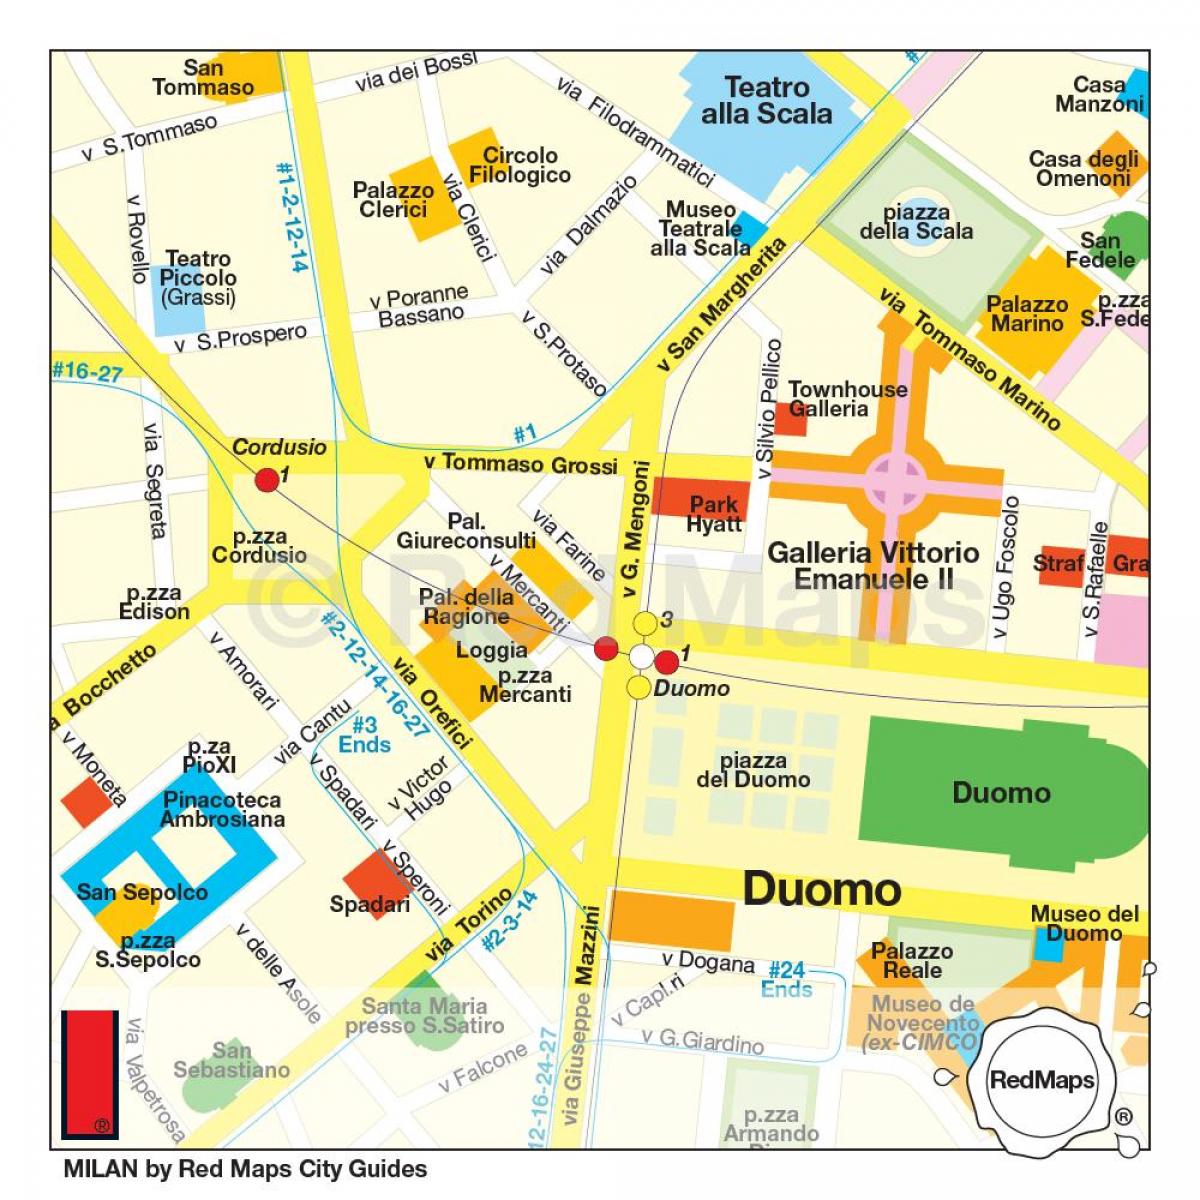 Mailand shopping district anzeigen